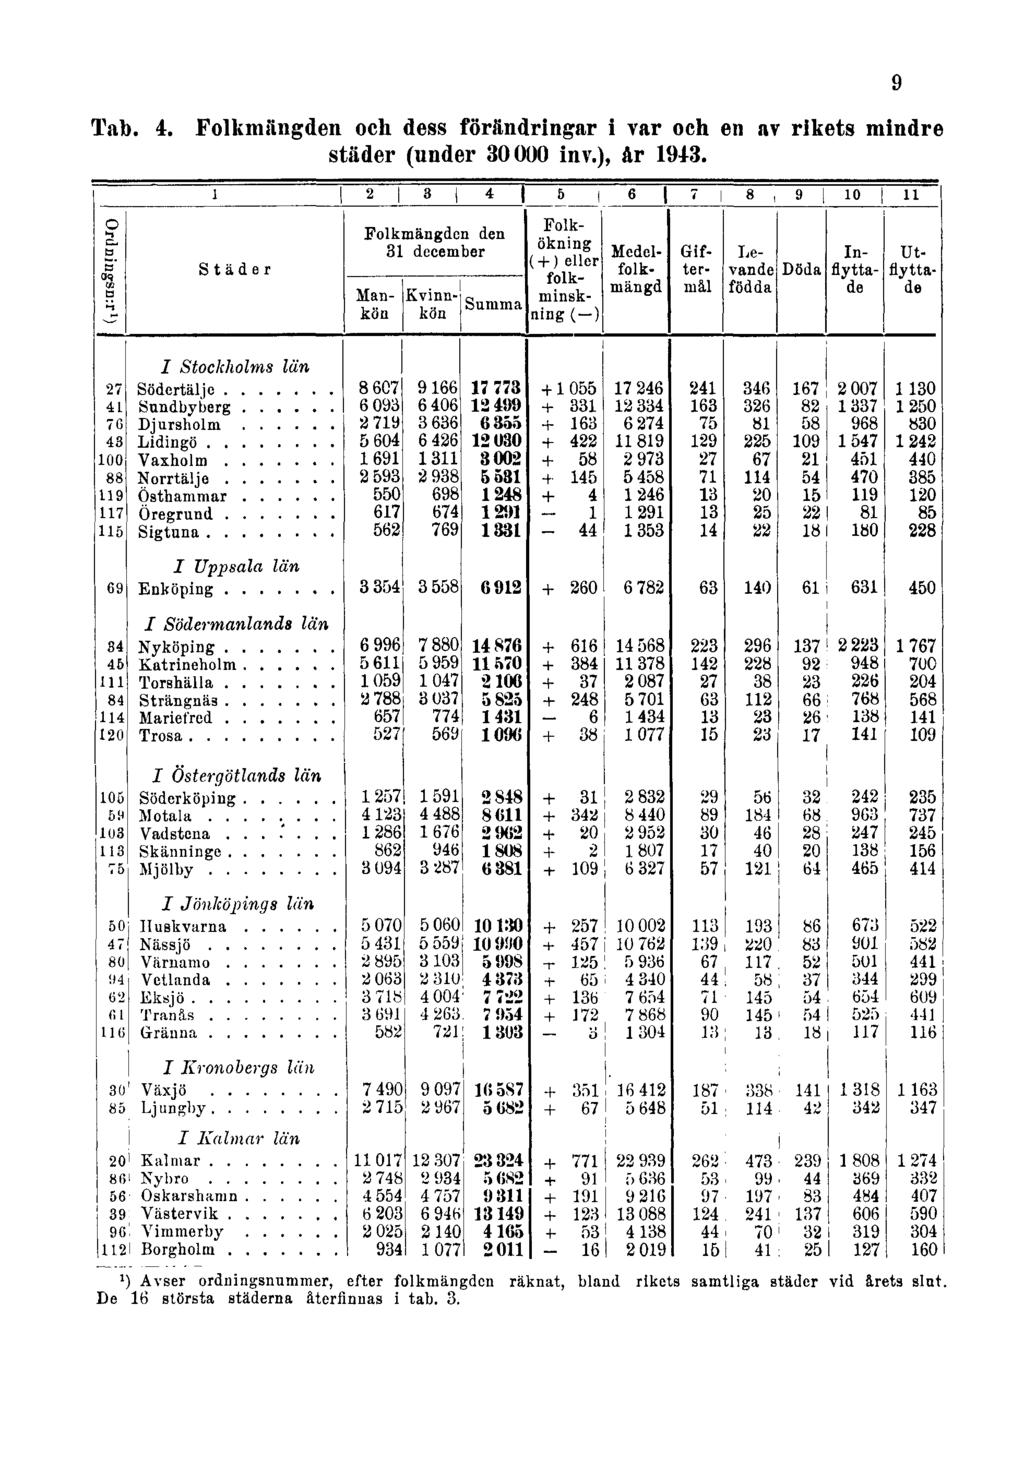 Tab. 4. Folkmängden och dess förändringar i var och en av rikets mindre städer (under 30000 inv.), år 1943.